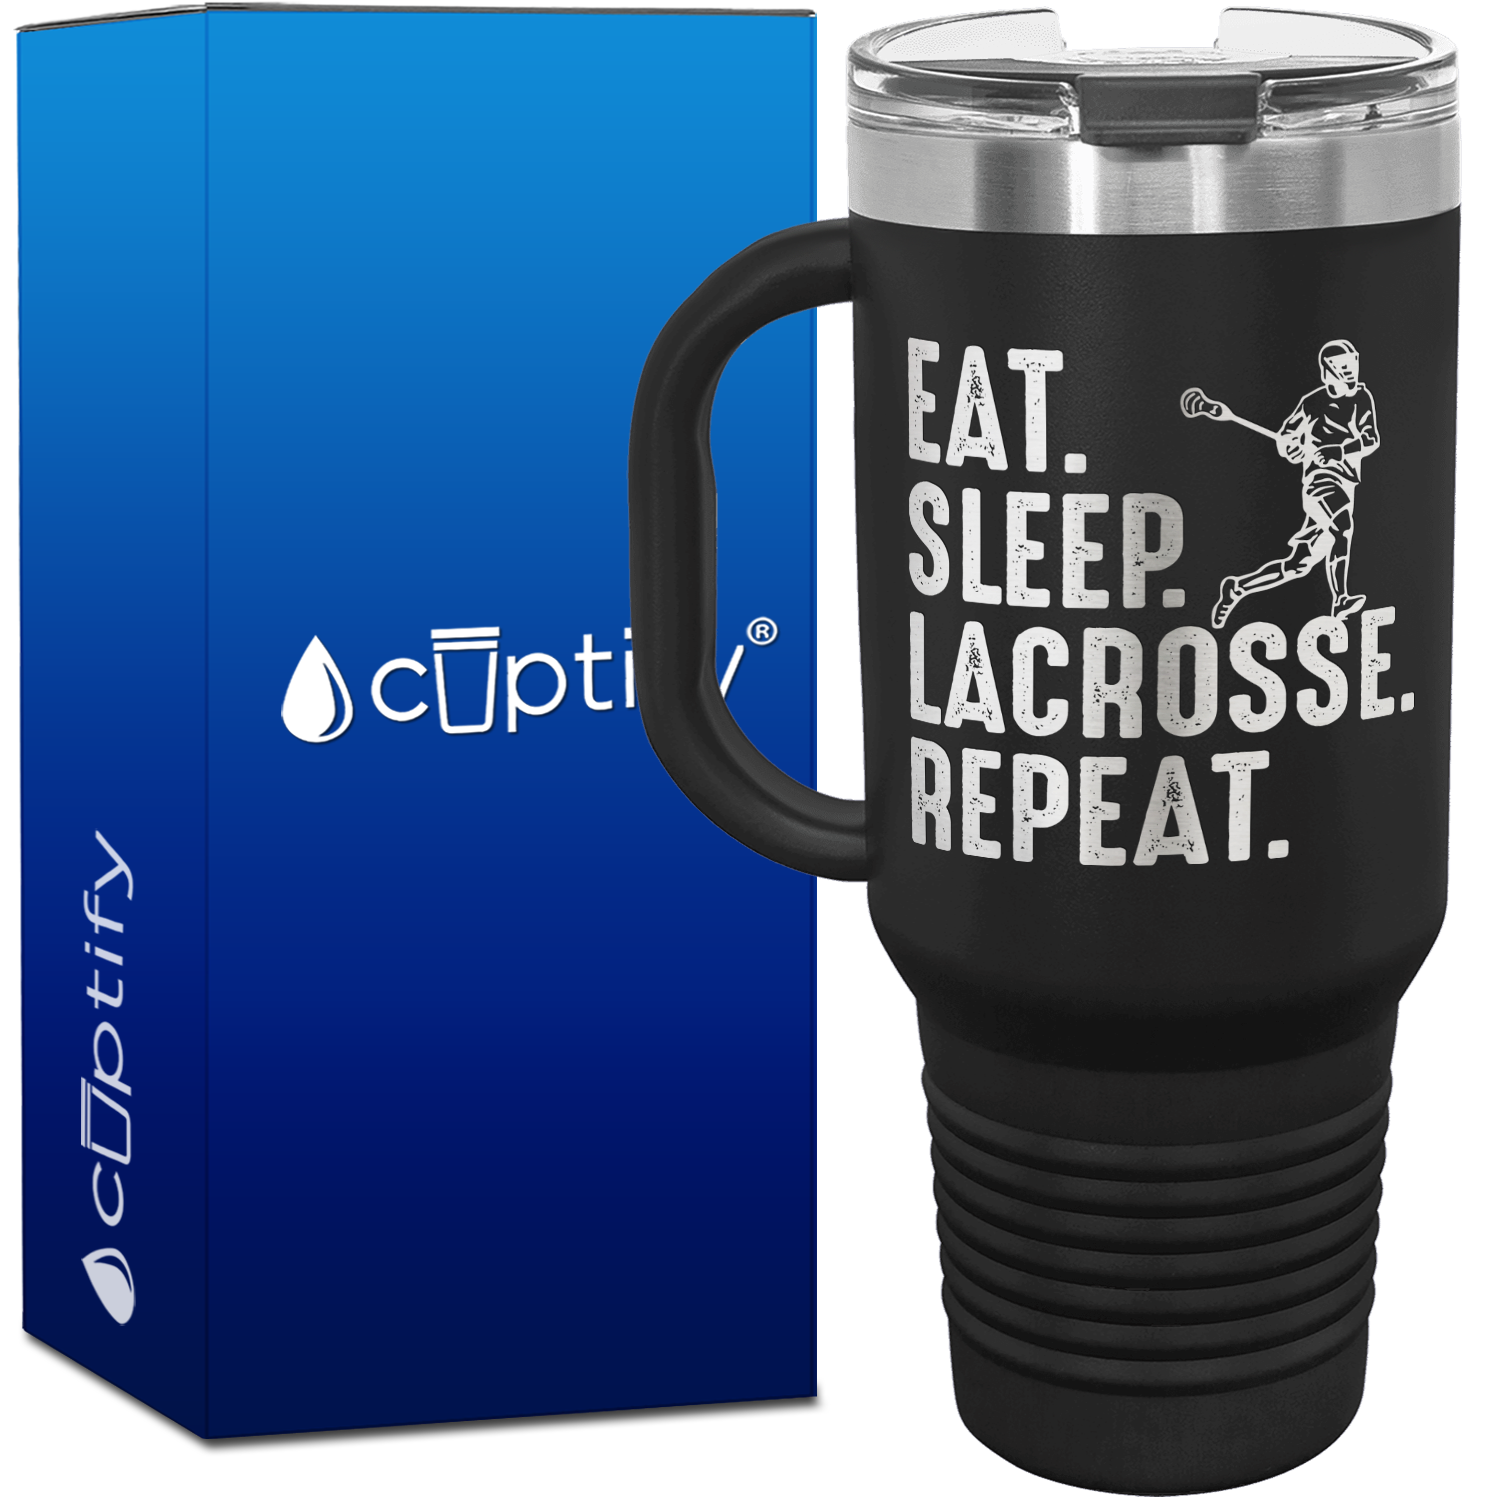 Eat. Sleep. Lacrosse. Repeat. 40oz Lacrosse Travel Mug